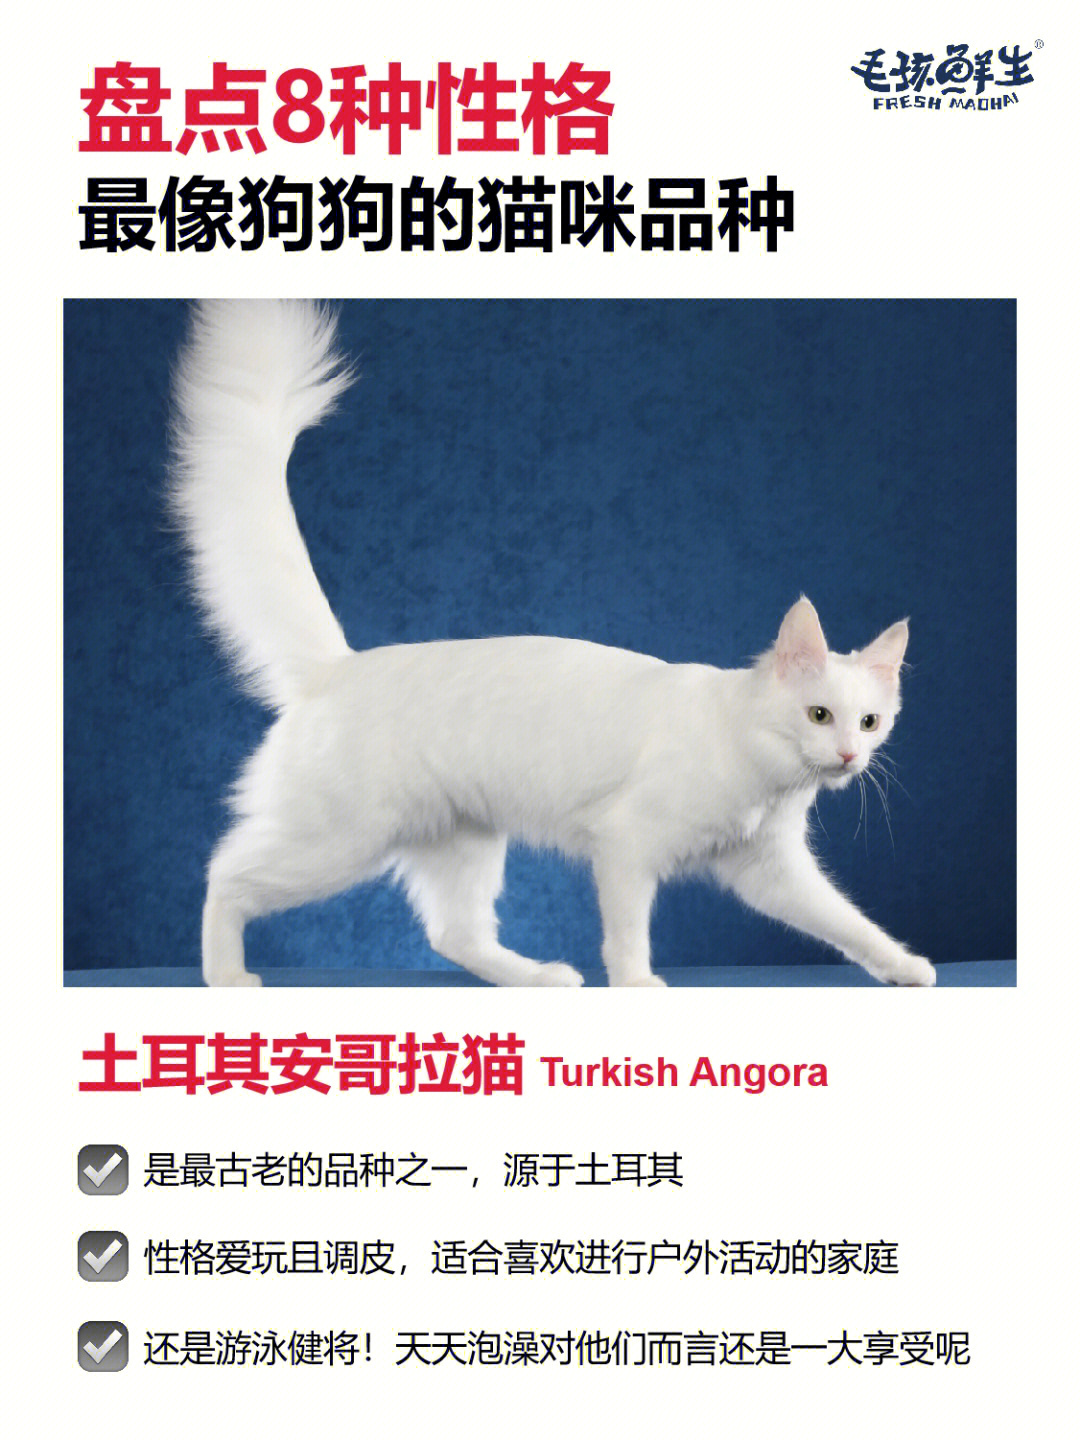 16615土耳其安哥拉猫turkish angora7515聪明,忠诚,友善